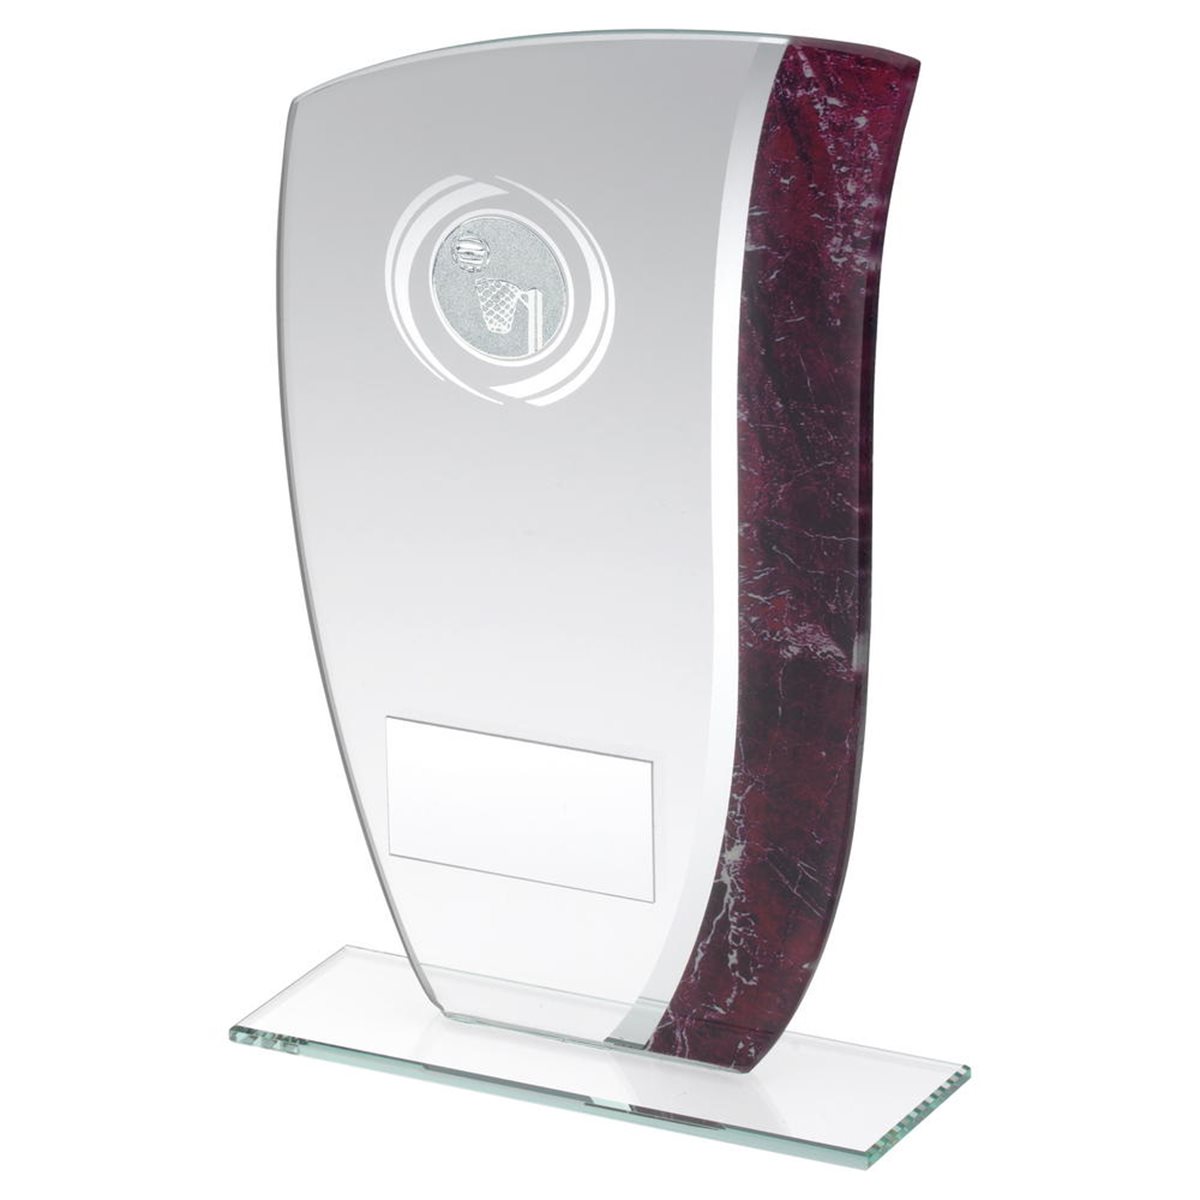 Netball Glass Award JR16-TD359G